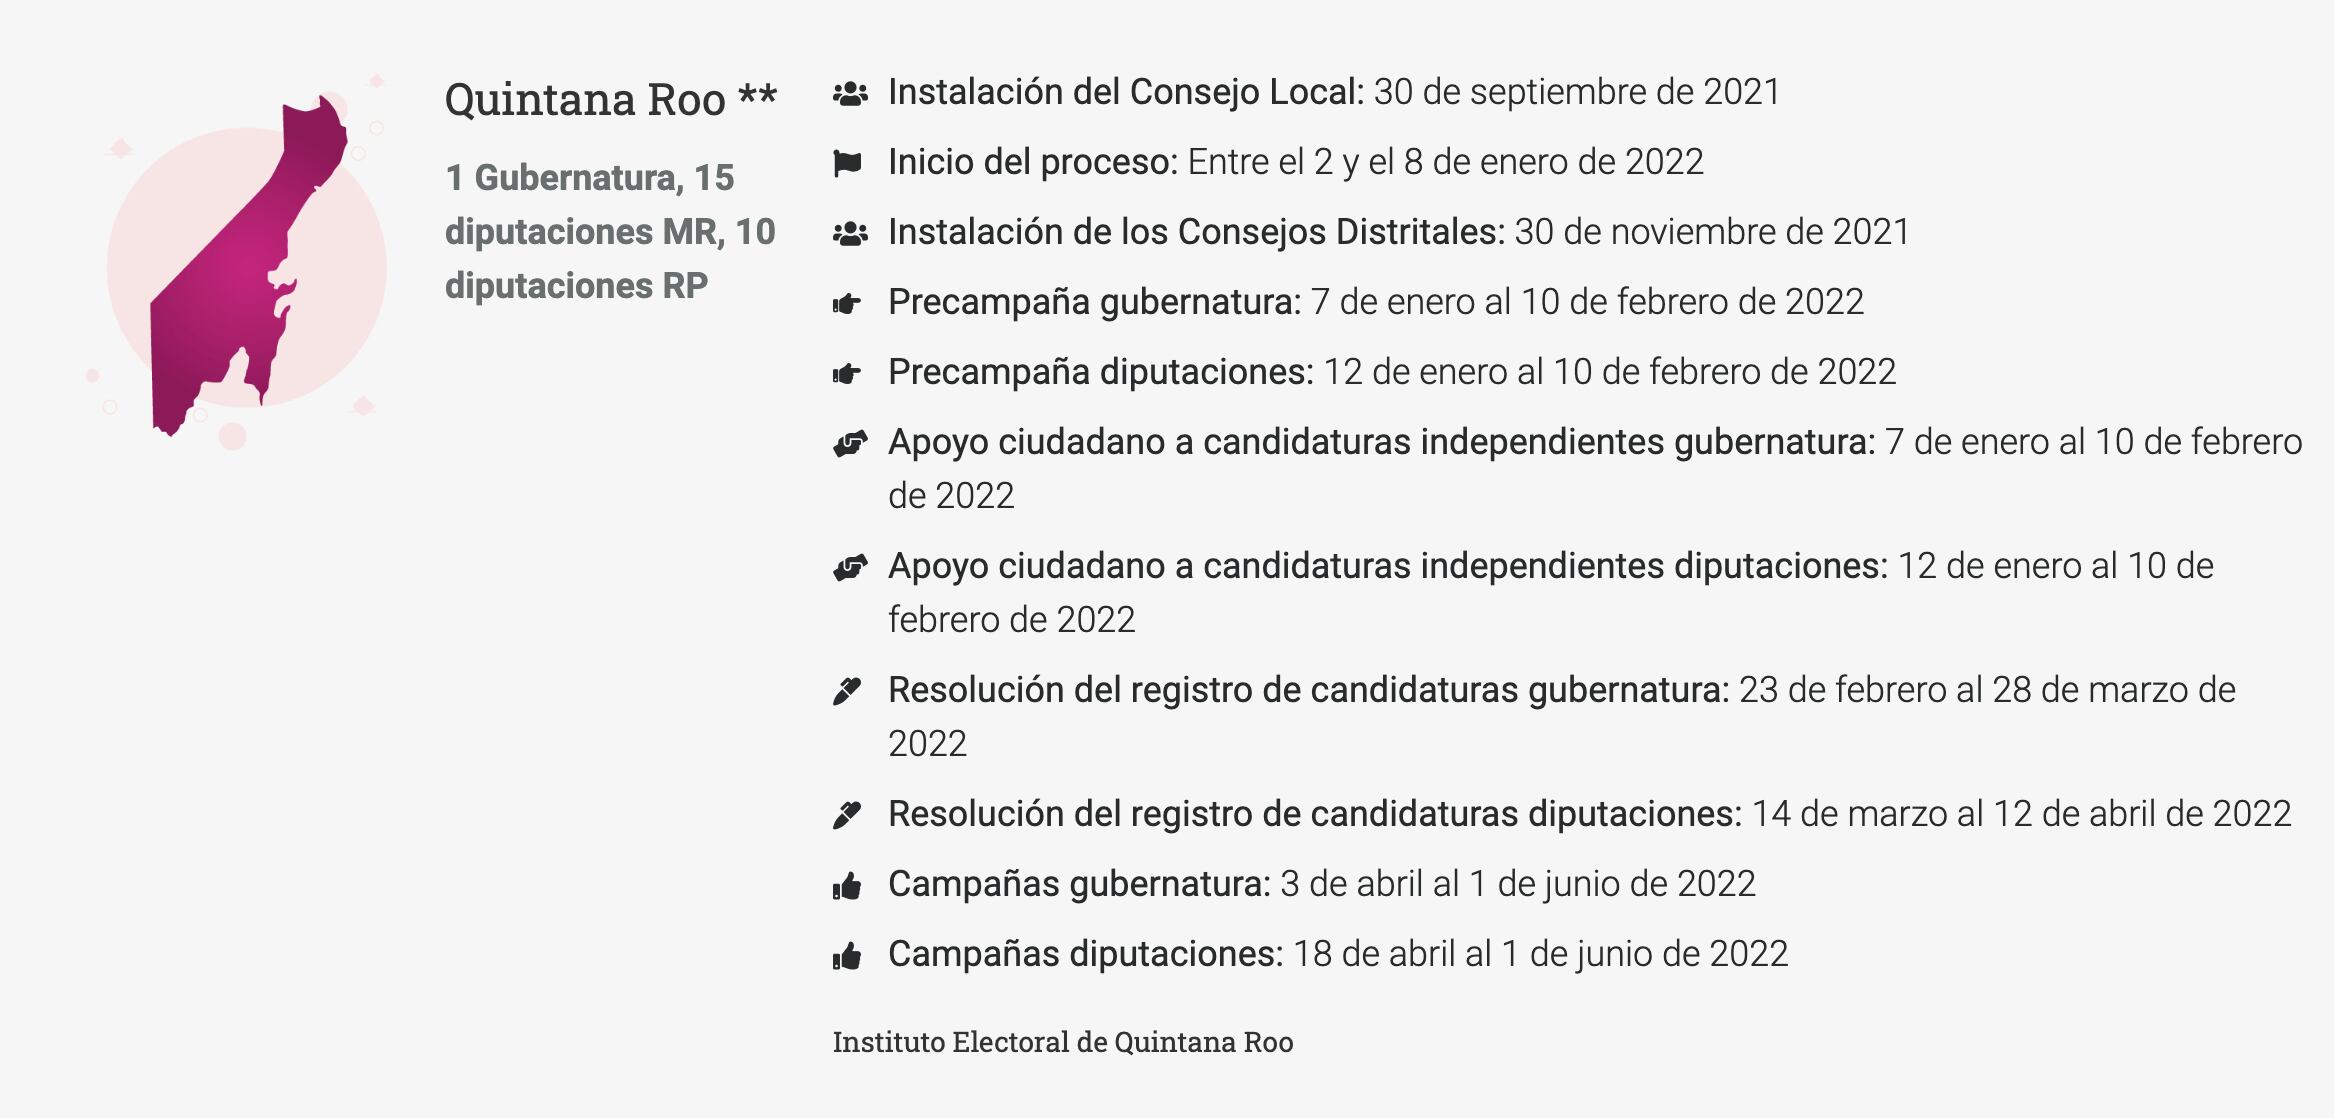 Calendario electoral de las elecciones 2022 en Quintana Roo